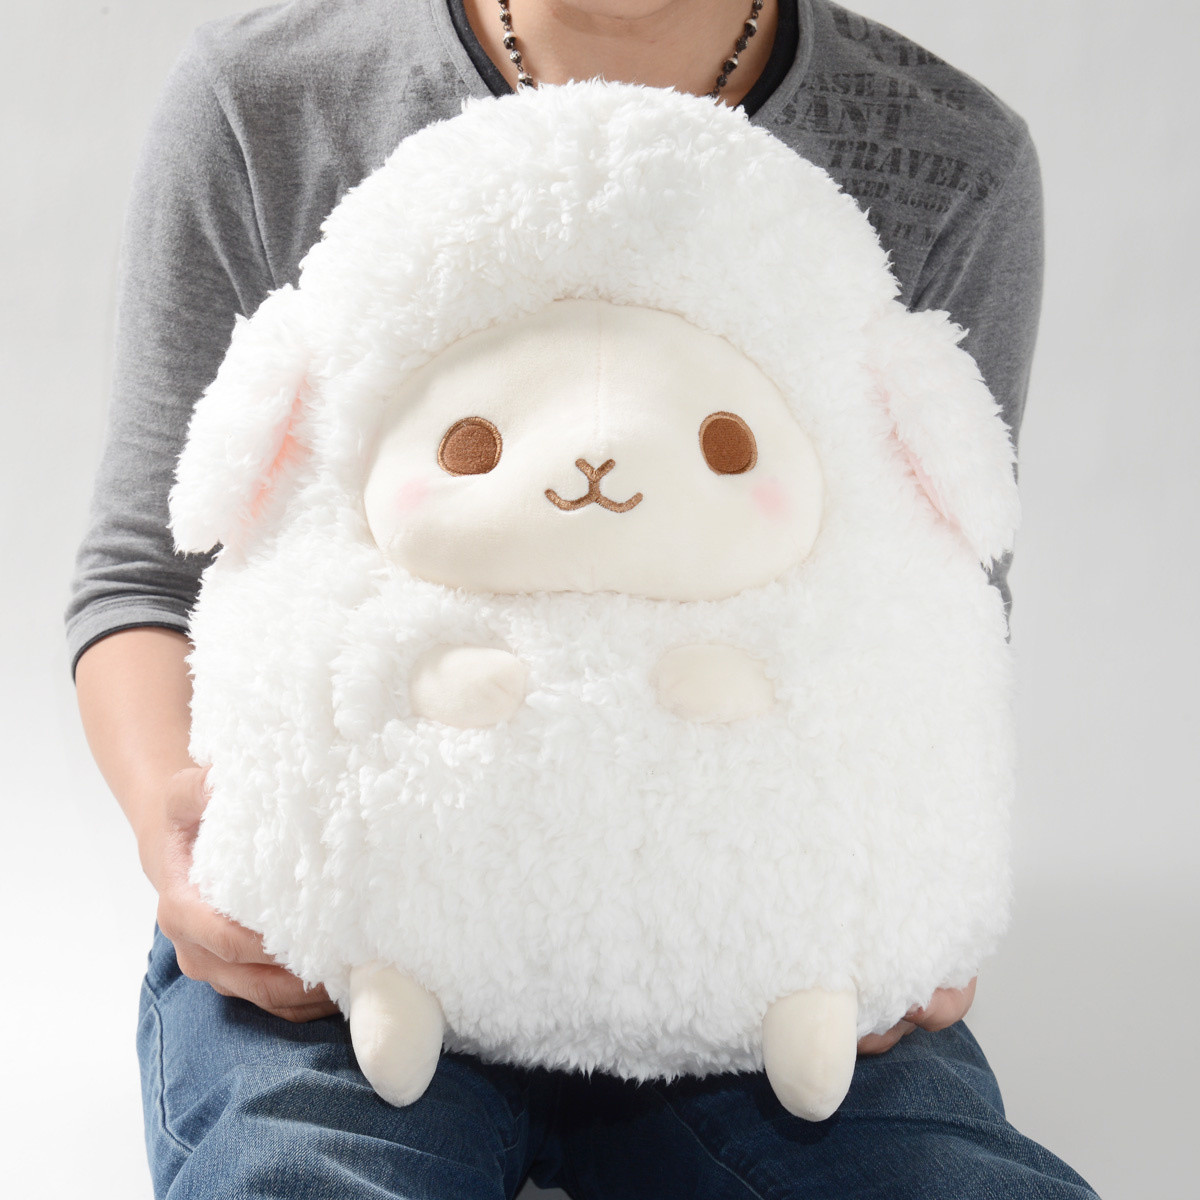 giant lamb stuffed animal